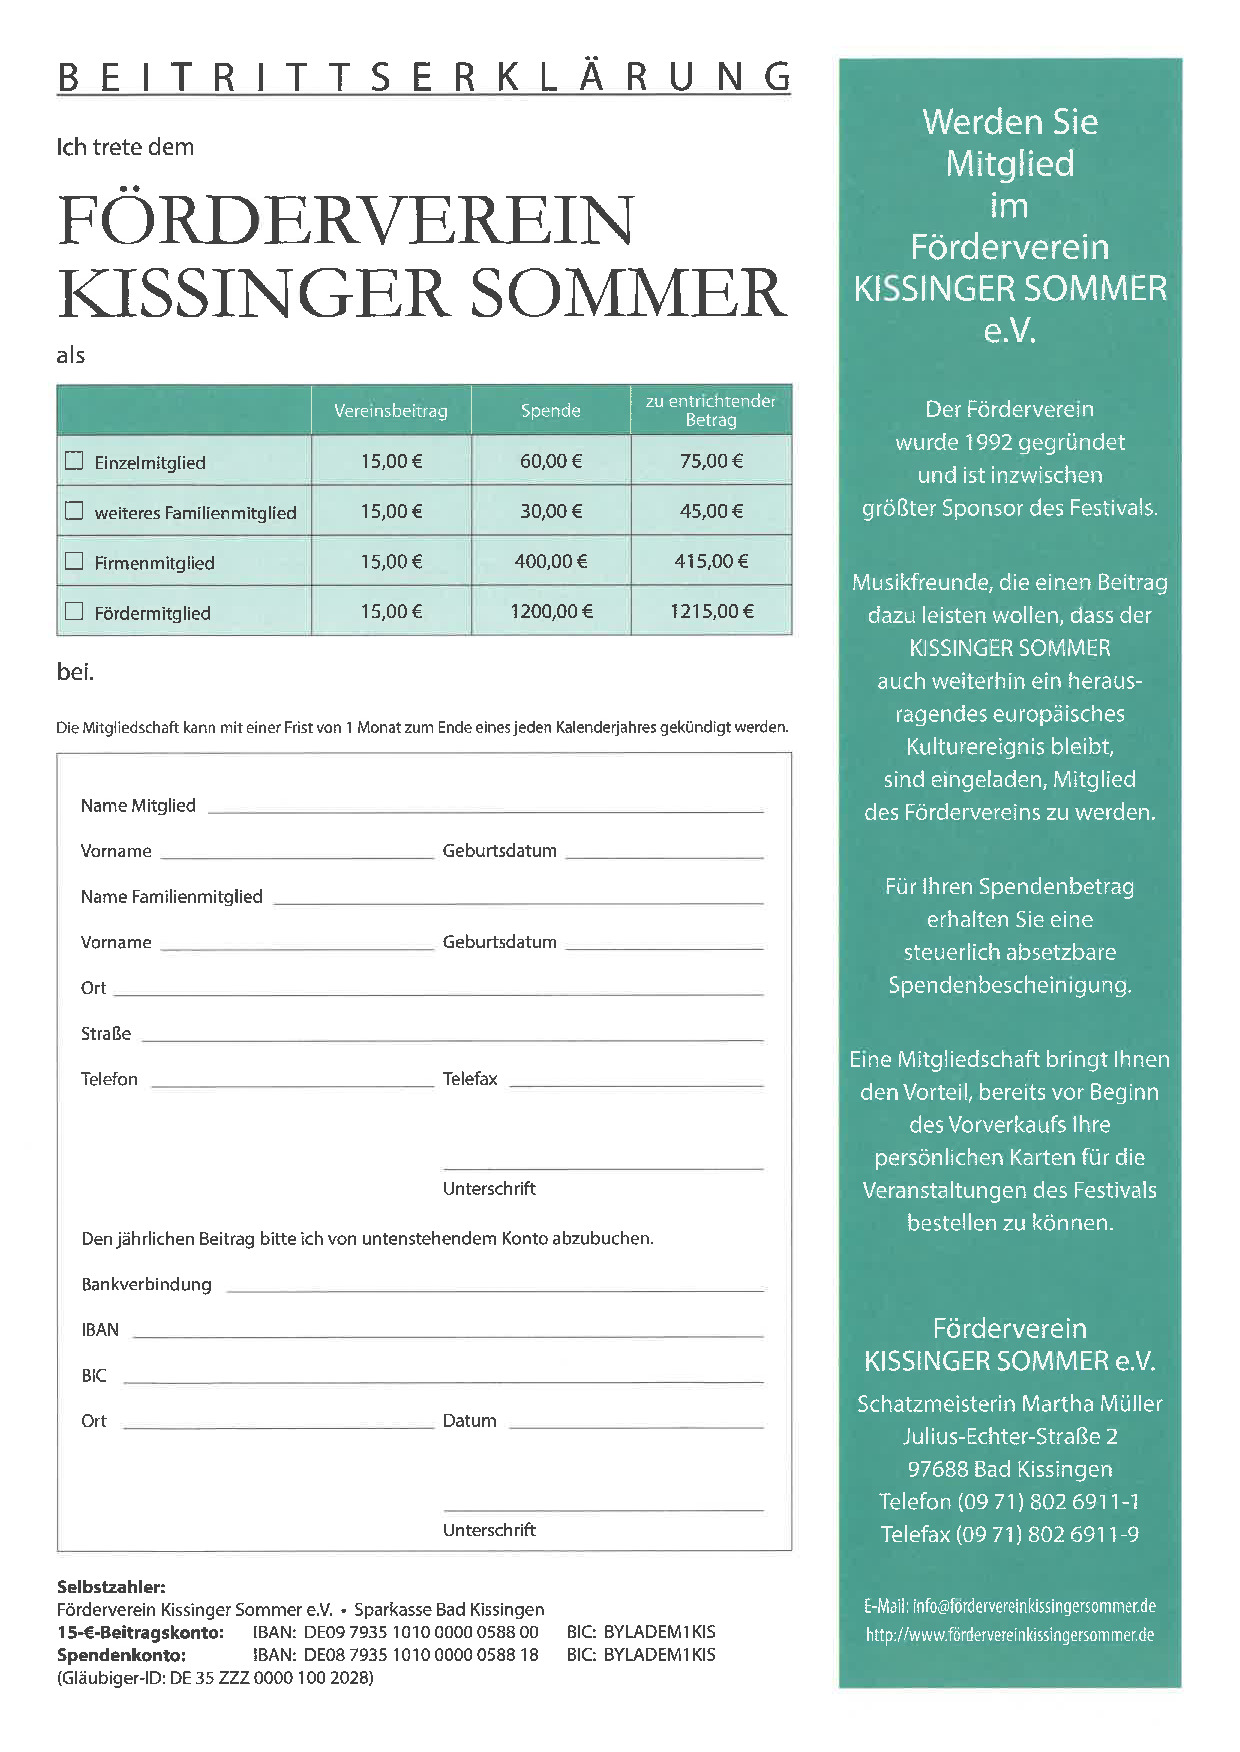 Beitrittserklaerung Foerderverein kissinger sommer